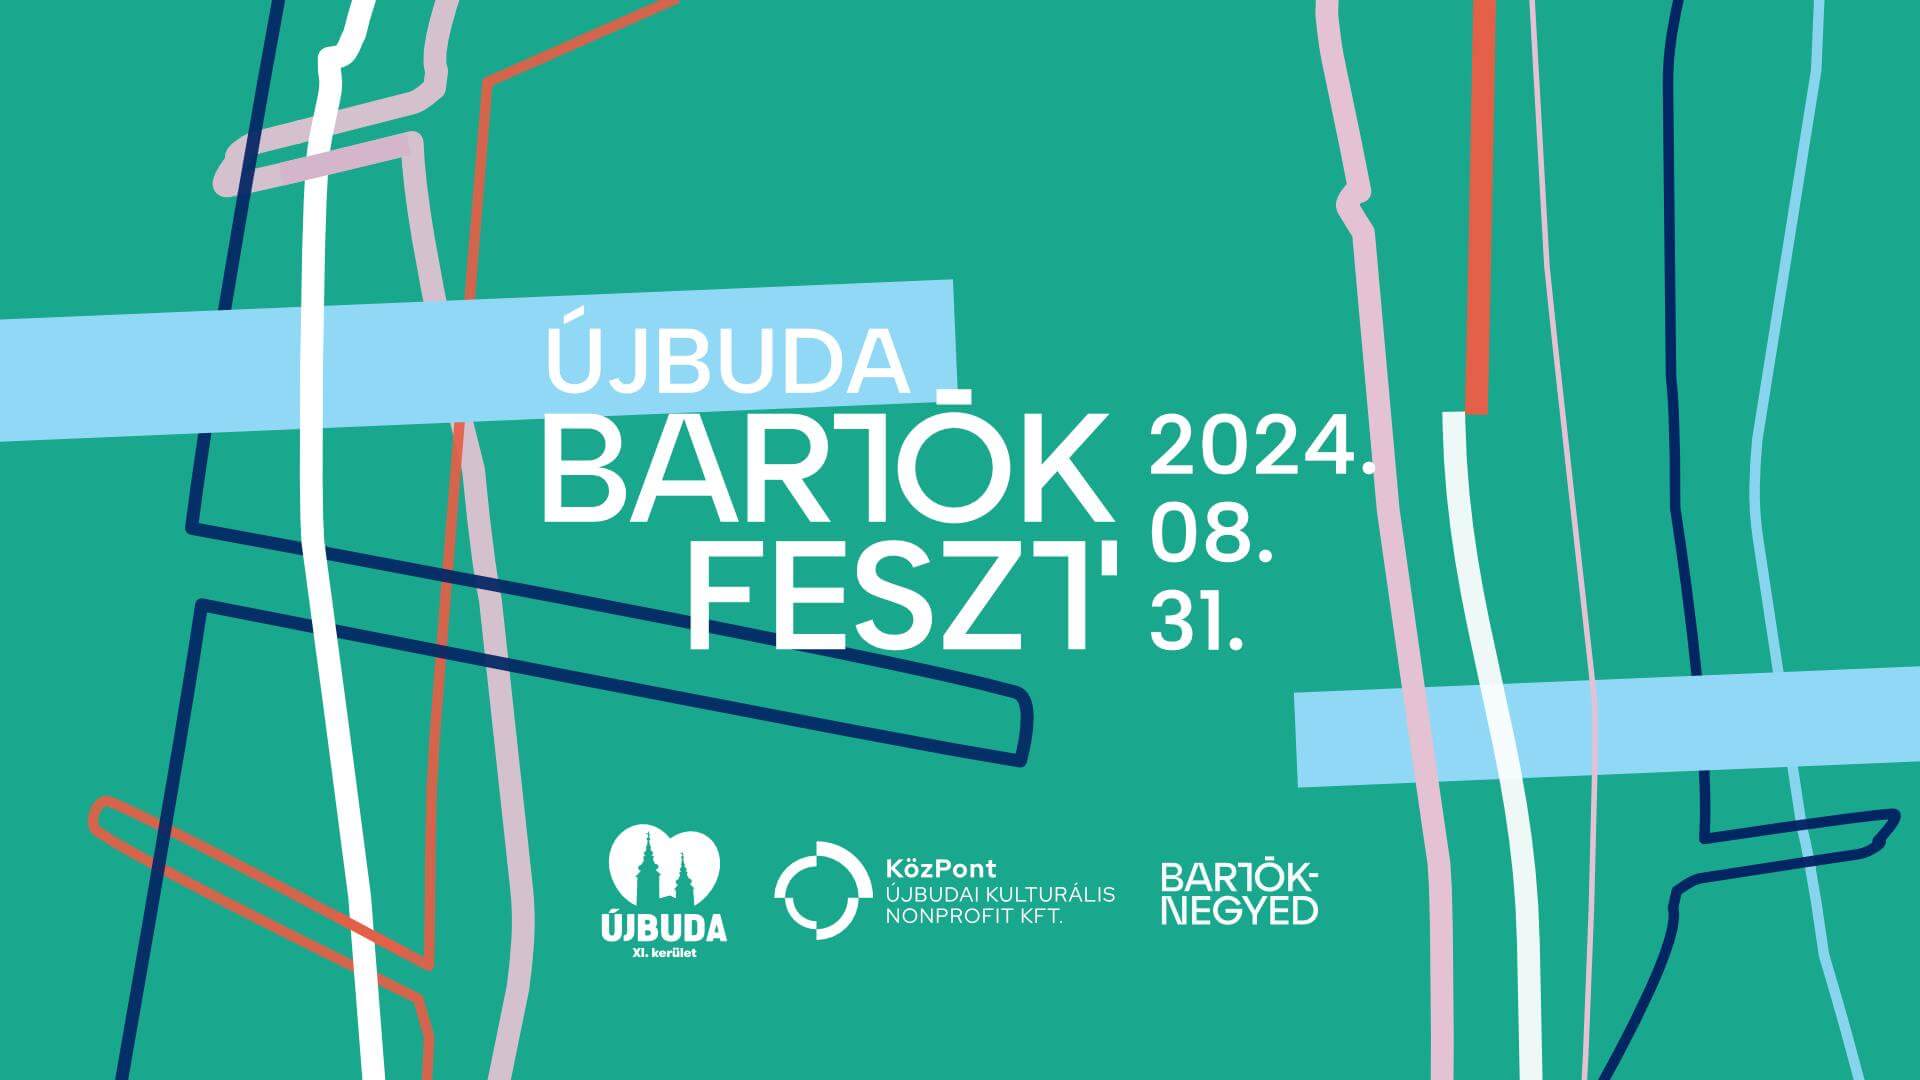 Bartók Feszt' 2023, Szent Gellért tér Budapest, 2 September